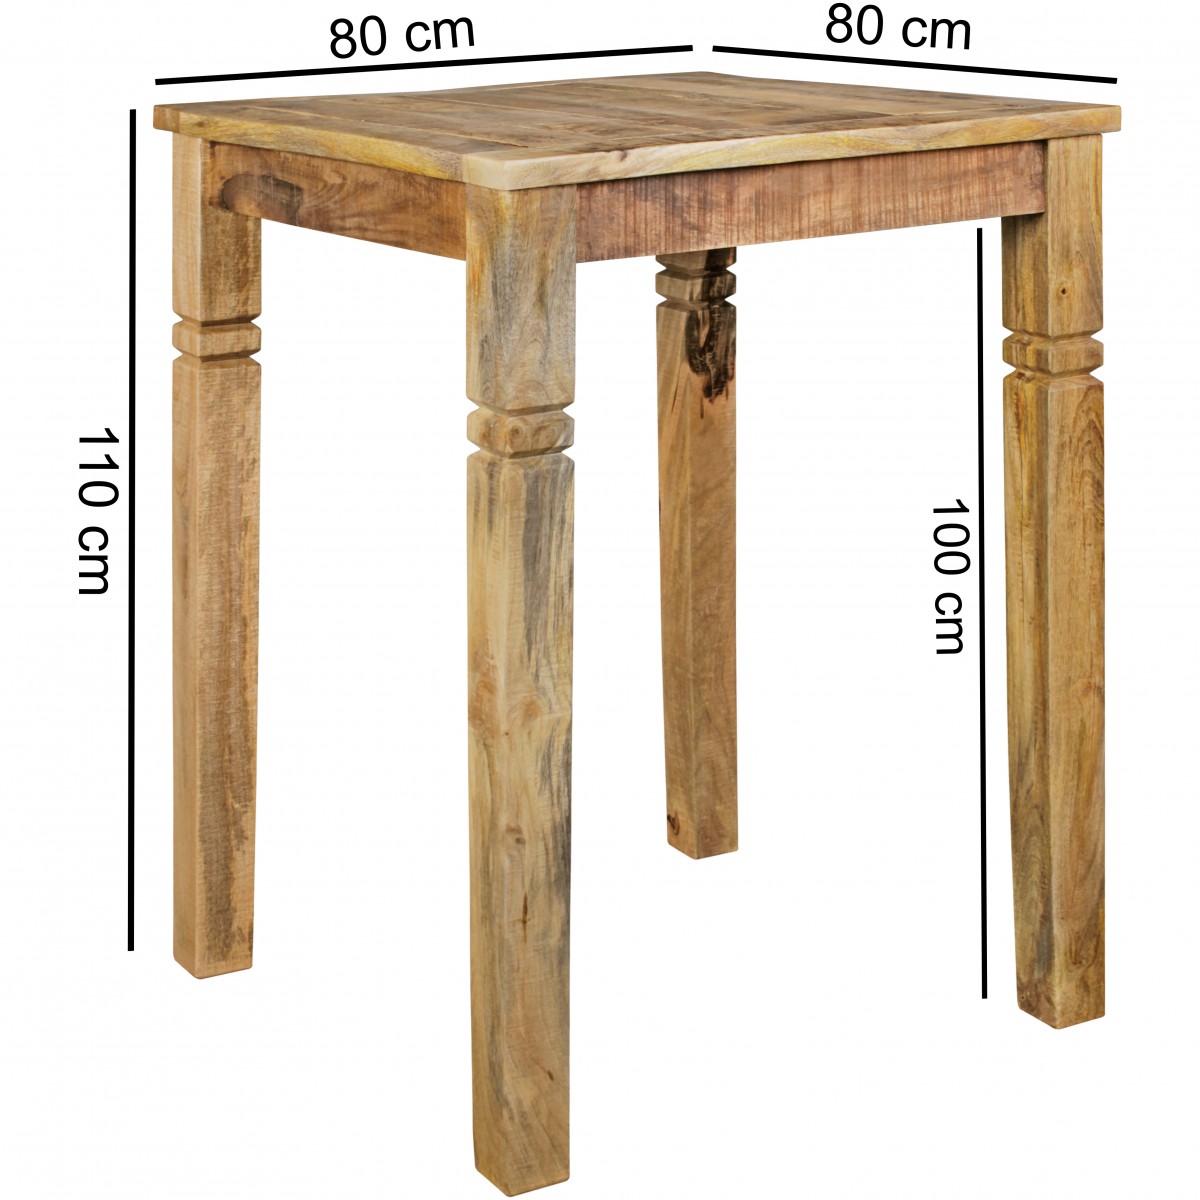 condensor achterzijde vergelijking Massief houten bartafel | Aktie wonen.nl